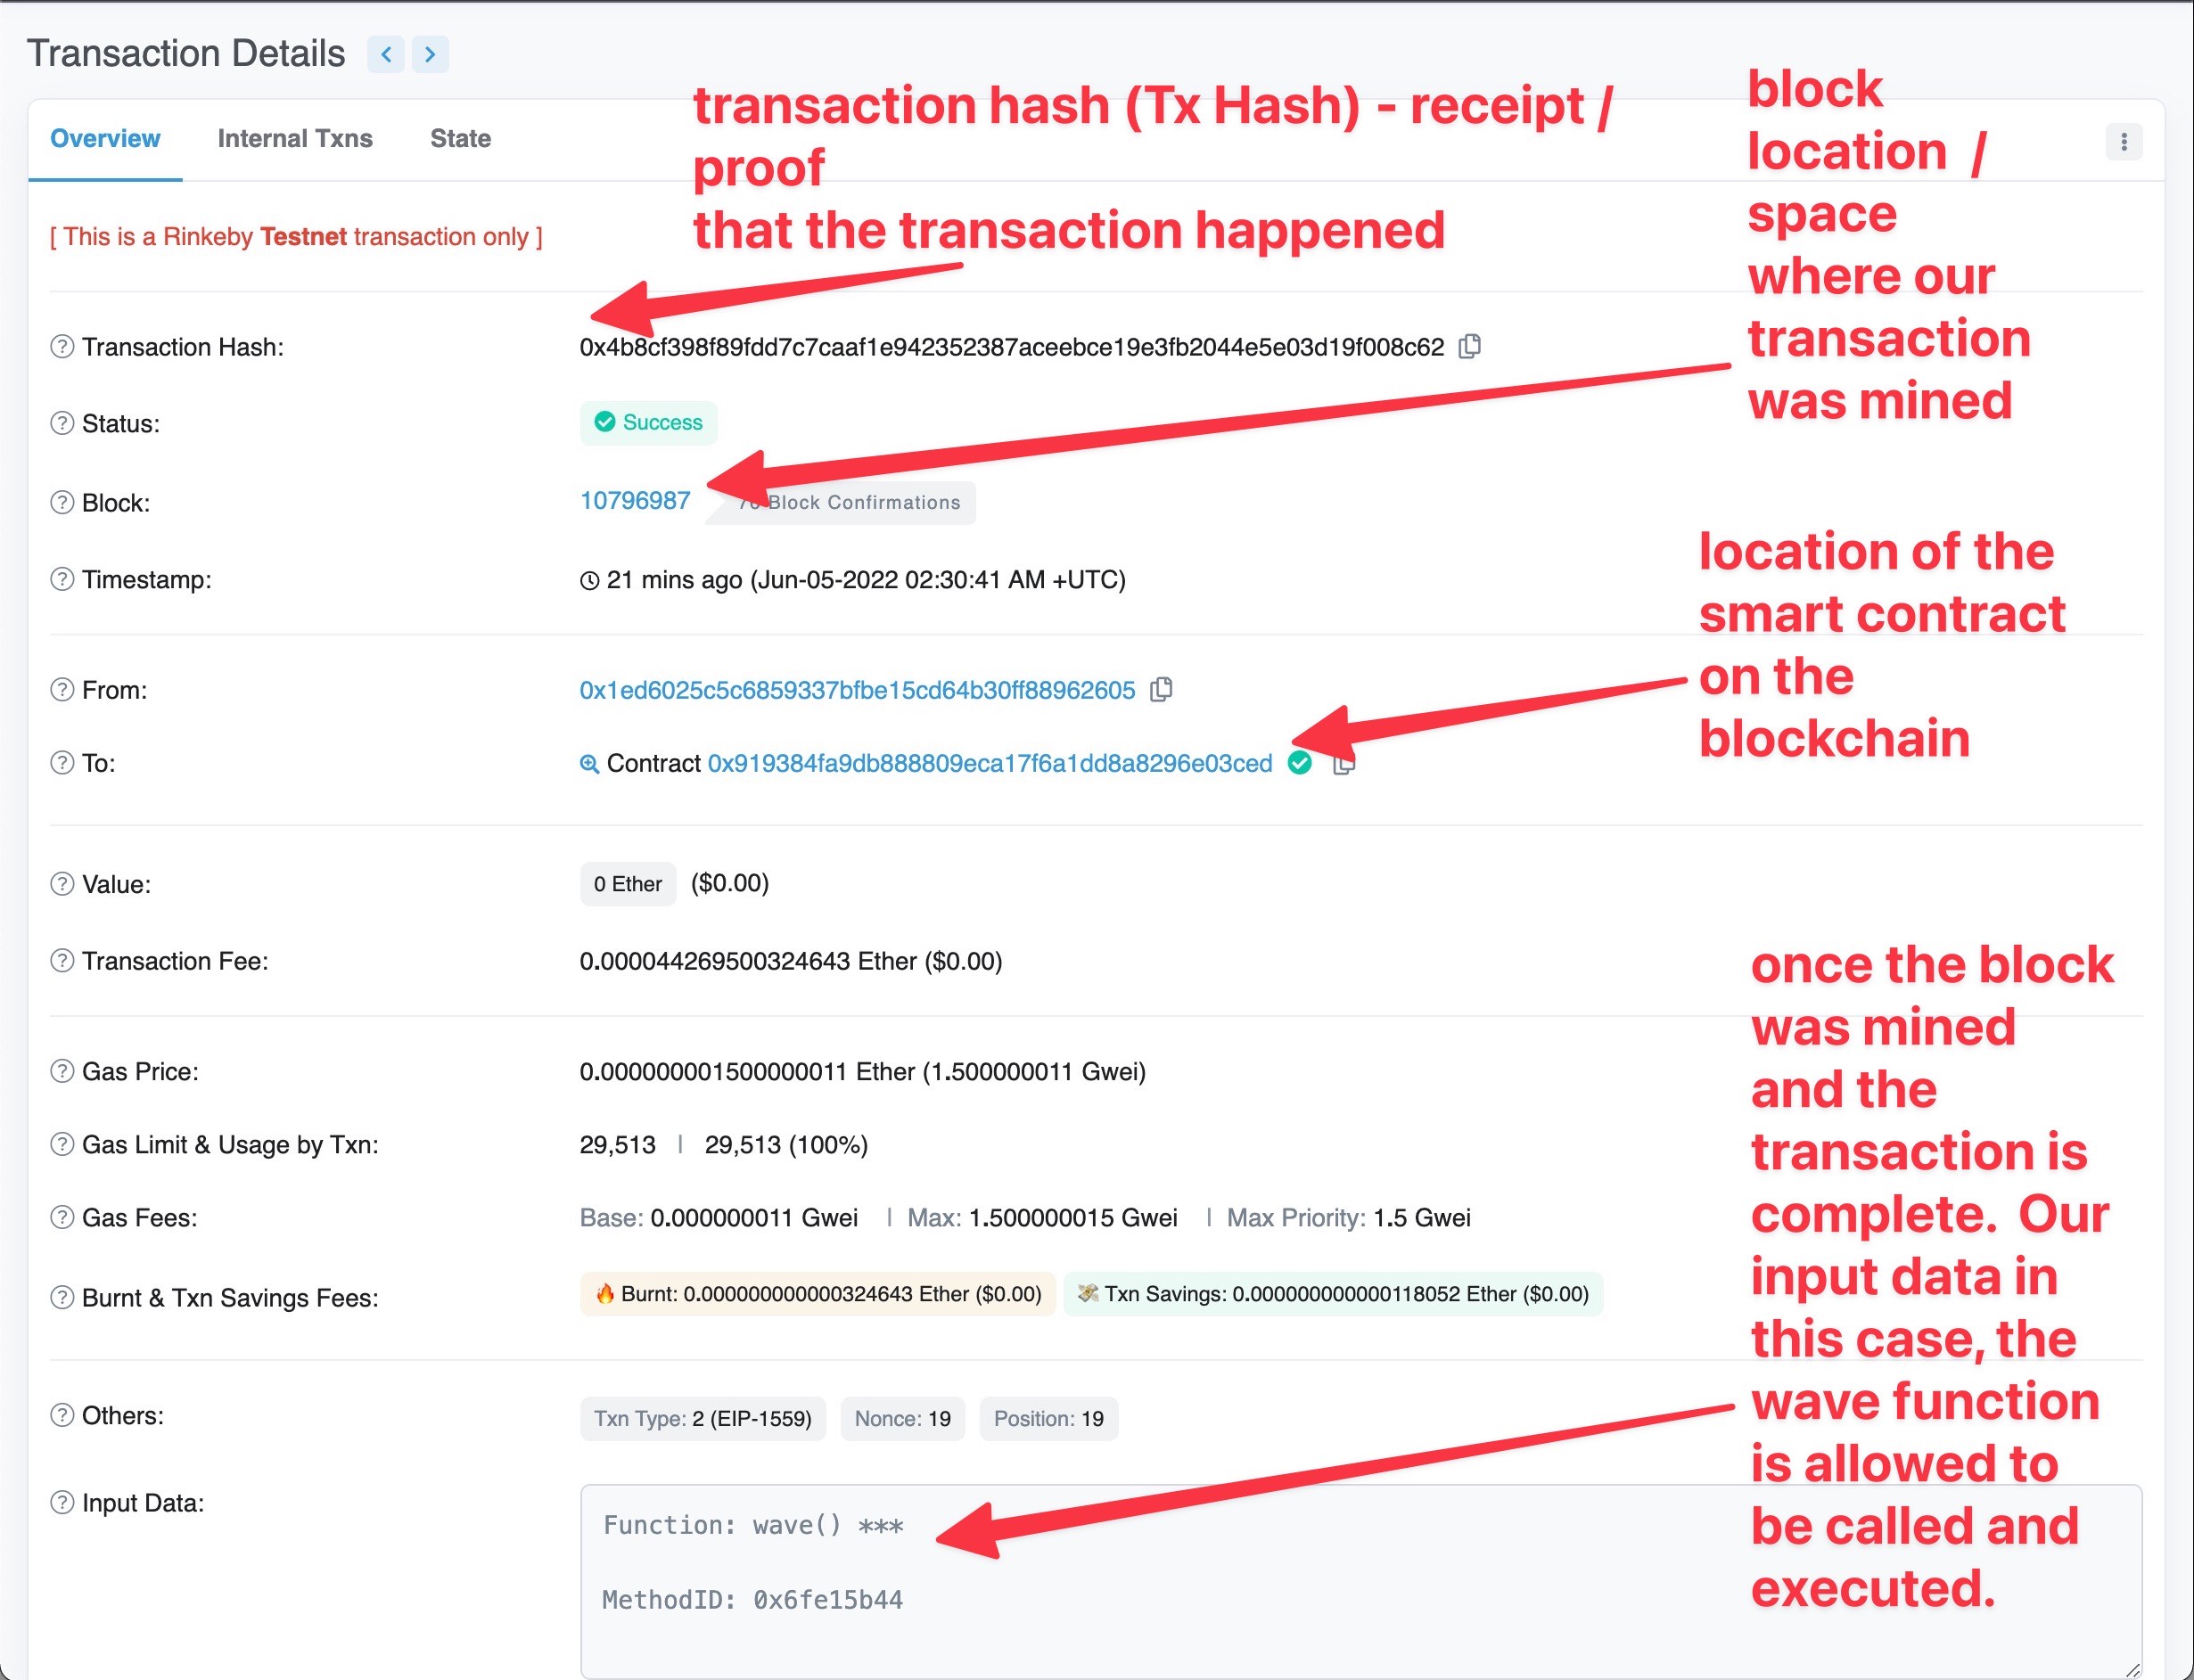 transaction hash details explained